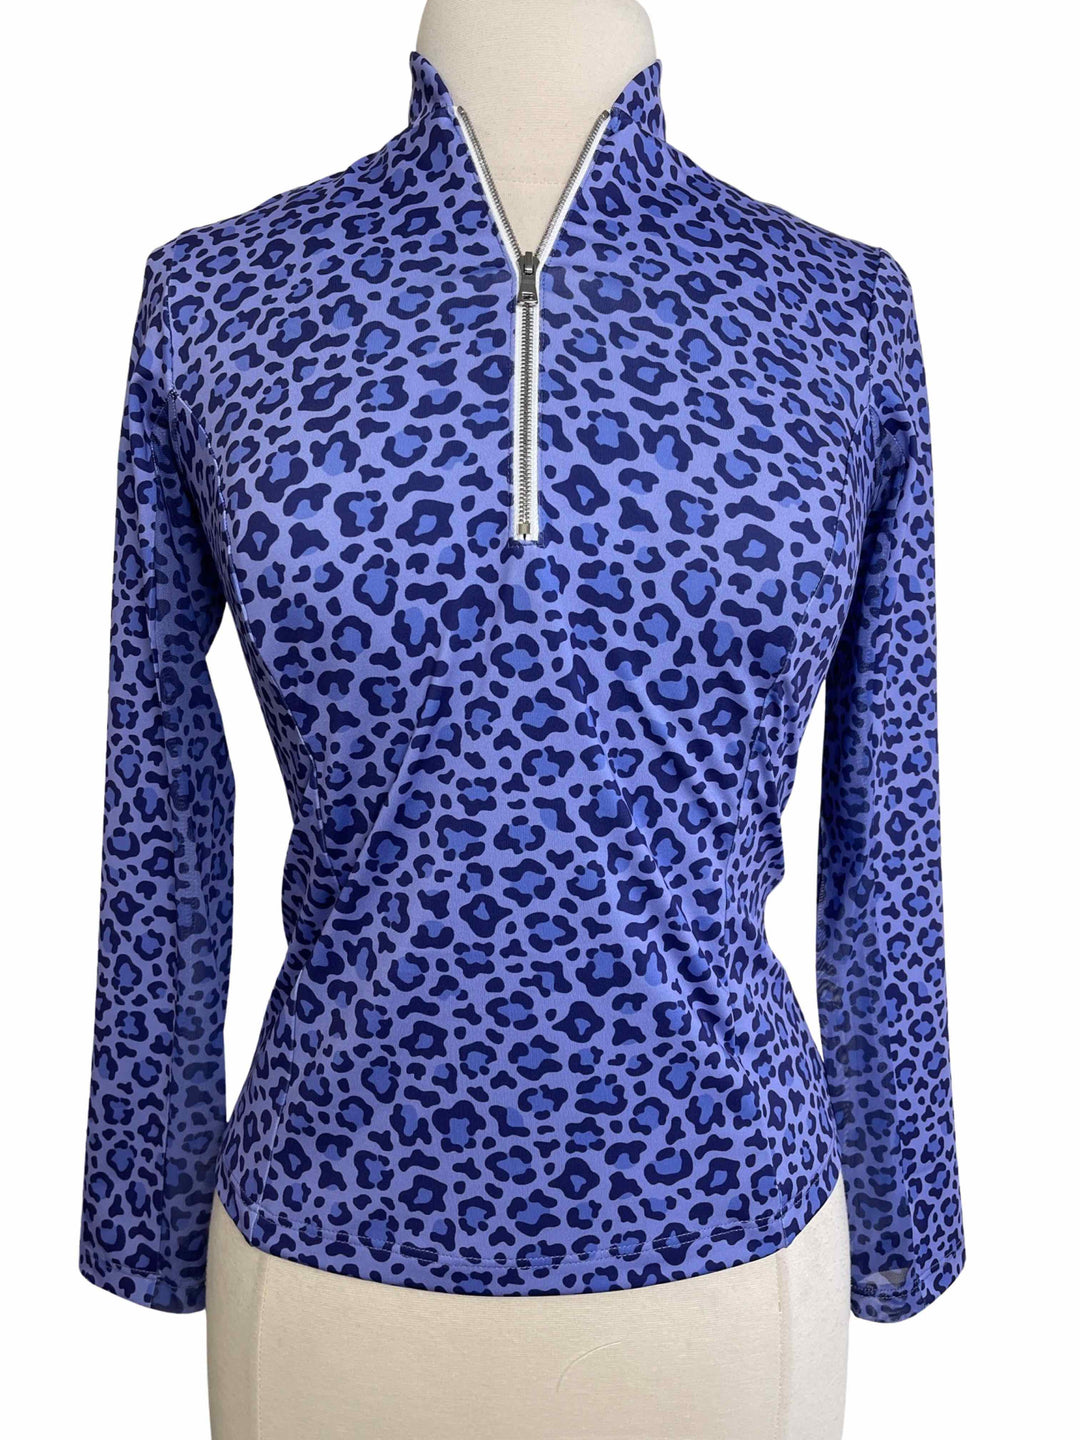 Amy Sport Katelyn 2.0 Long Sleeve Top - Purple Leopard- X-Small - Skorzie